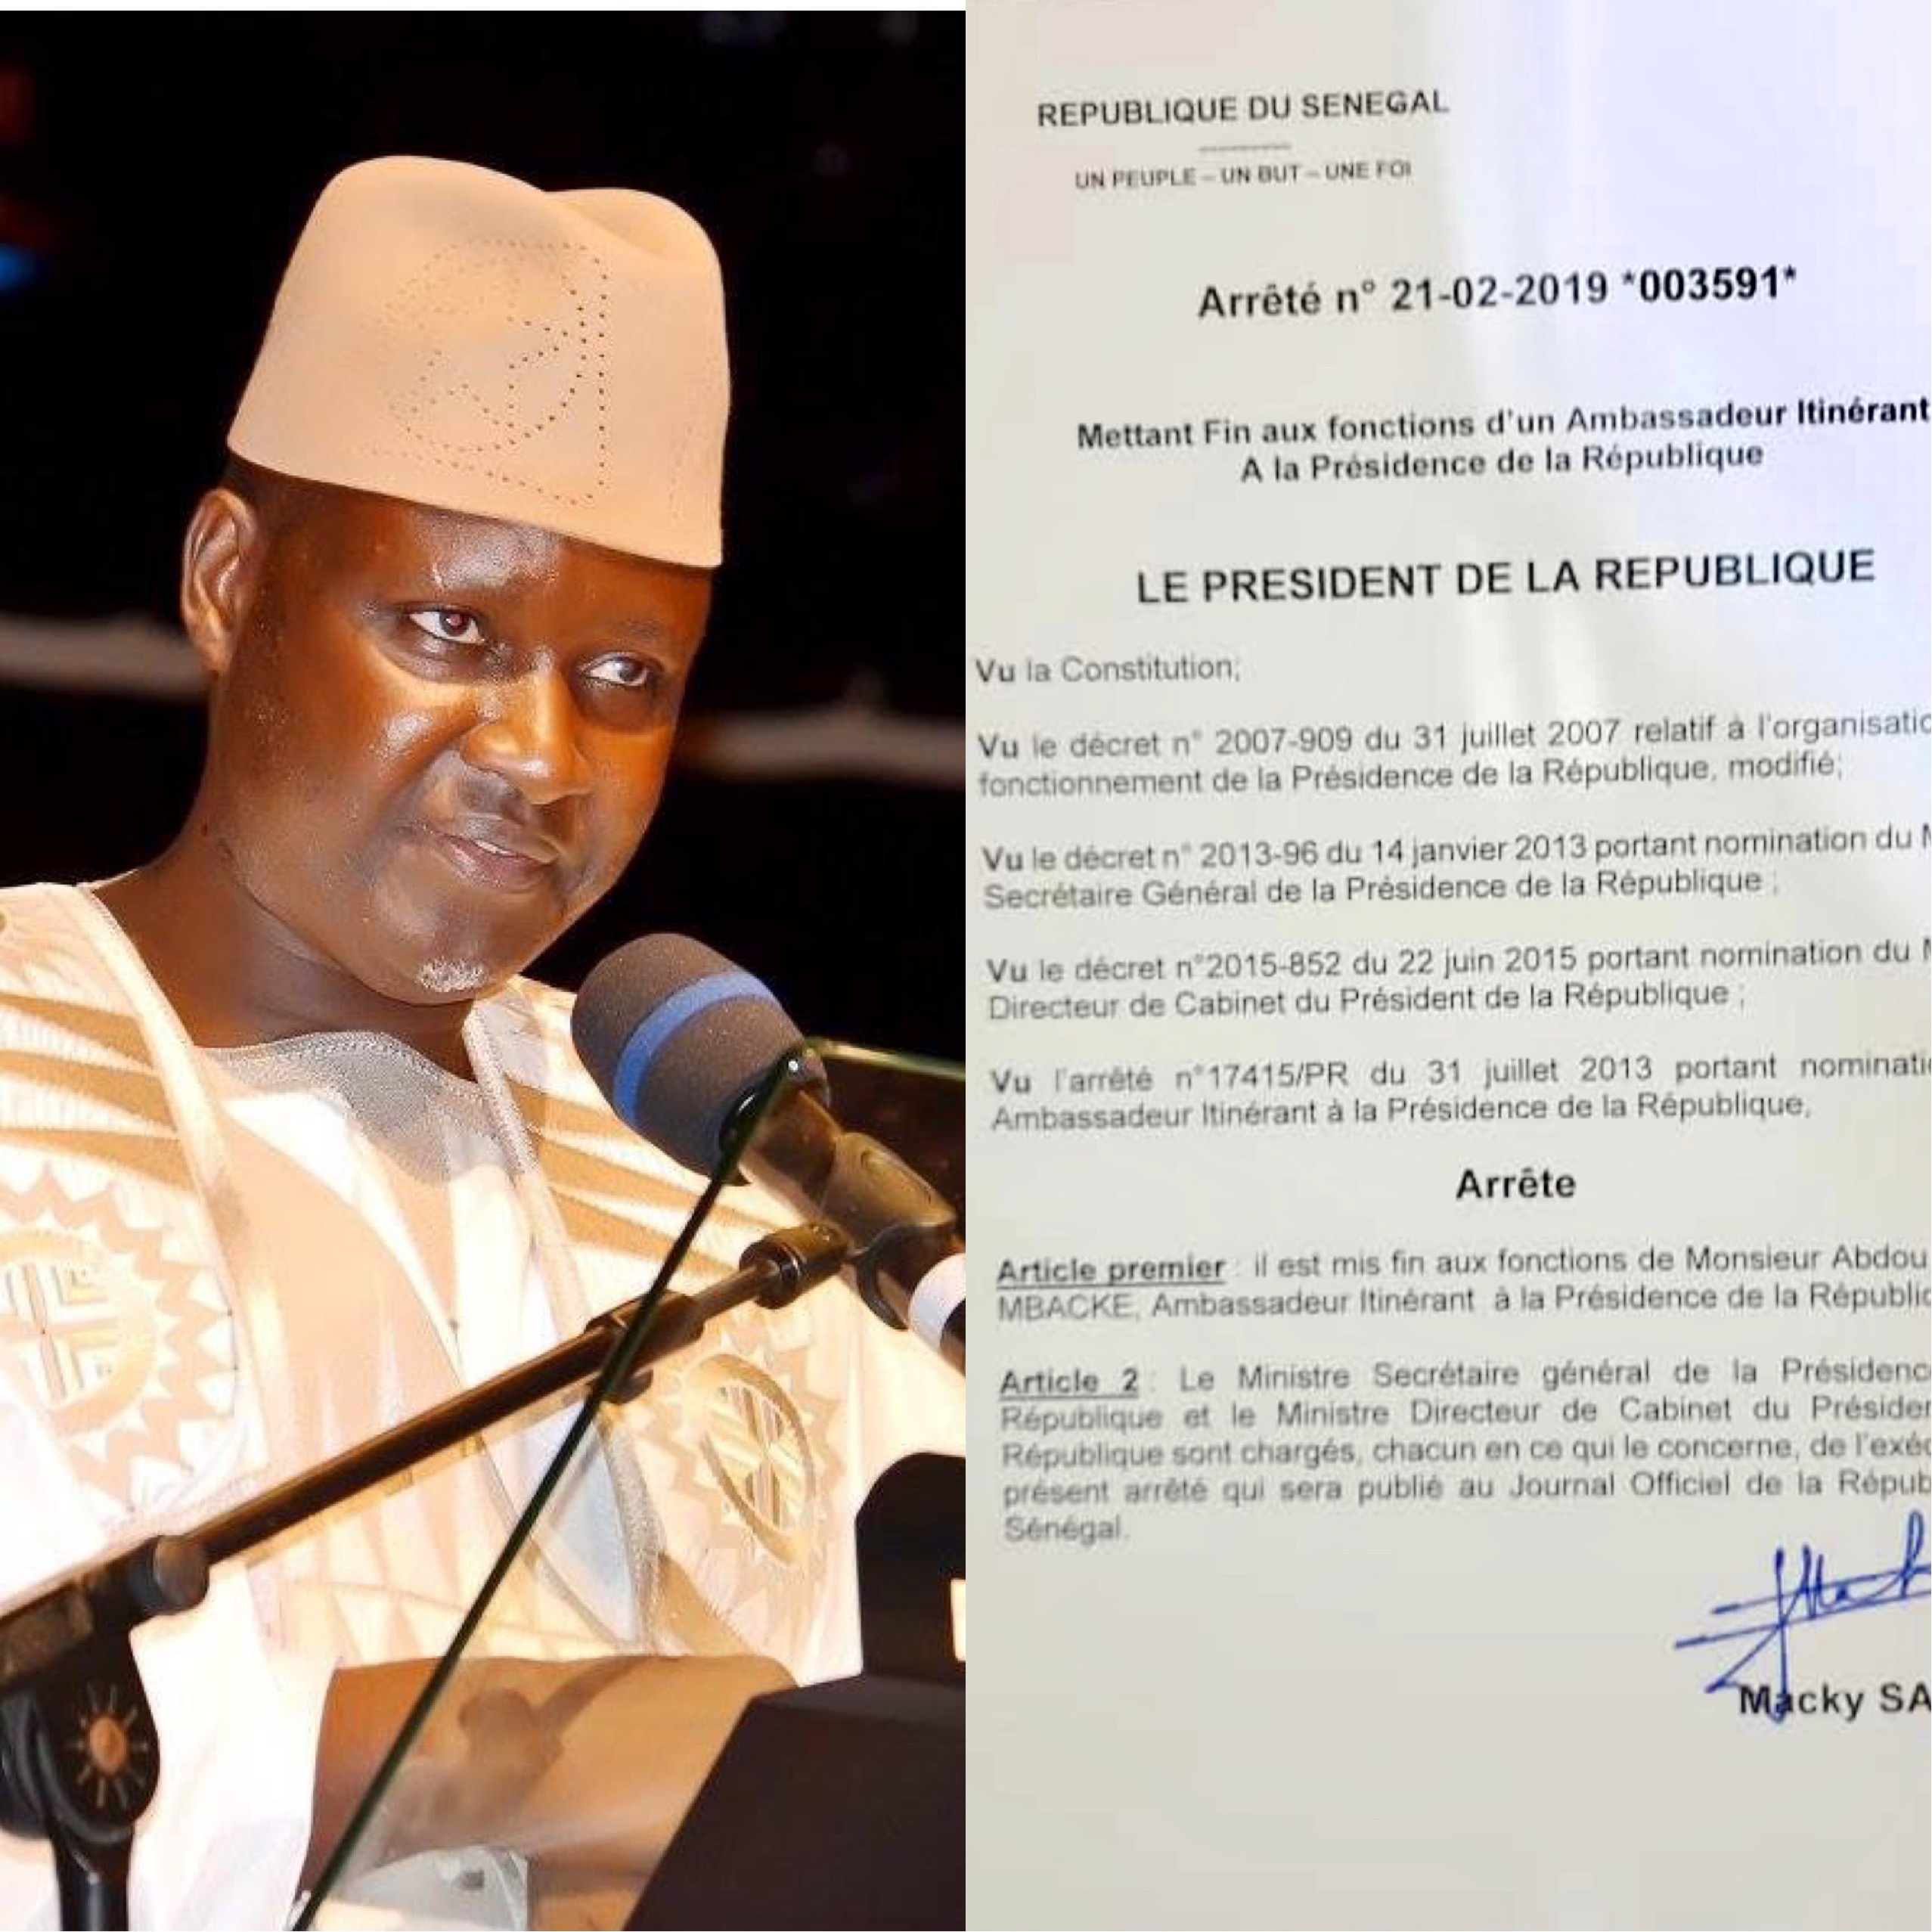 CONSÉQUENCE DE SON SOUTIEN À IDY / Serigne Abdou Samath Mbacké limogé de ses fonctions d'Ambassadeur itinérant par le Président Macky Sall